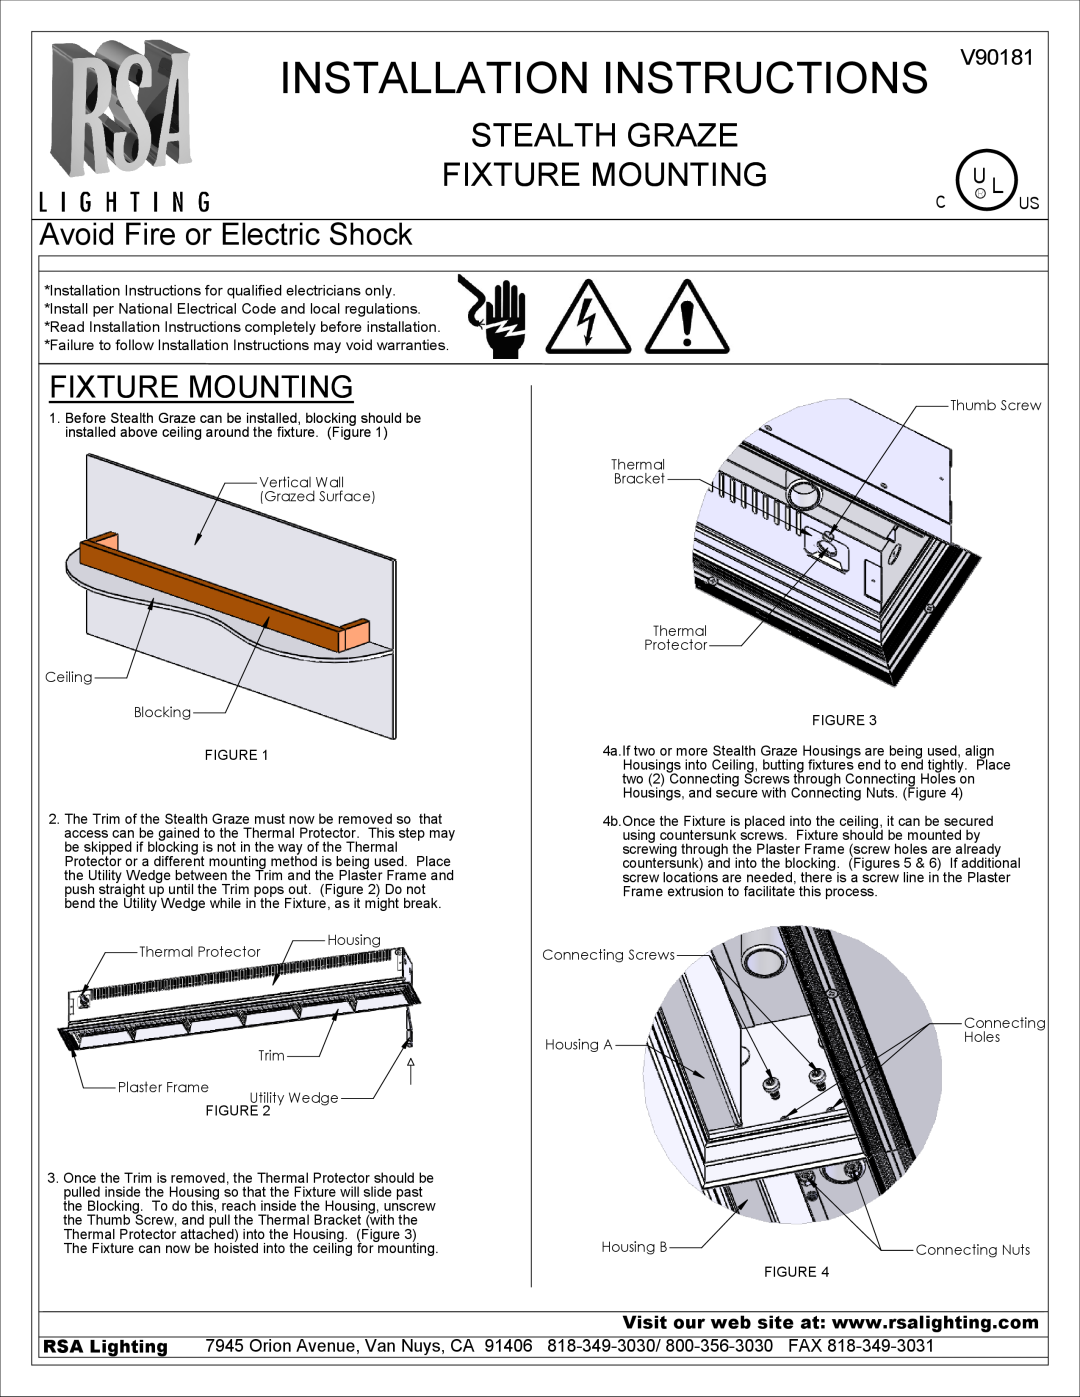 Cooper Lighting V90181 installation instructions Installation Instructions, Stealth Graze Fixture Mounting, C Us 